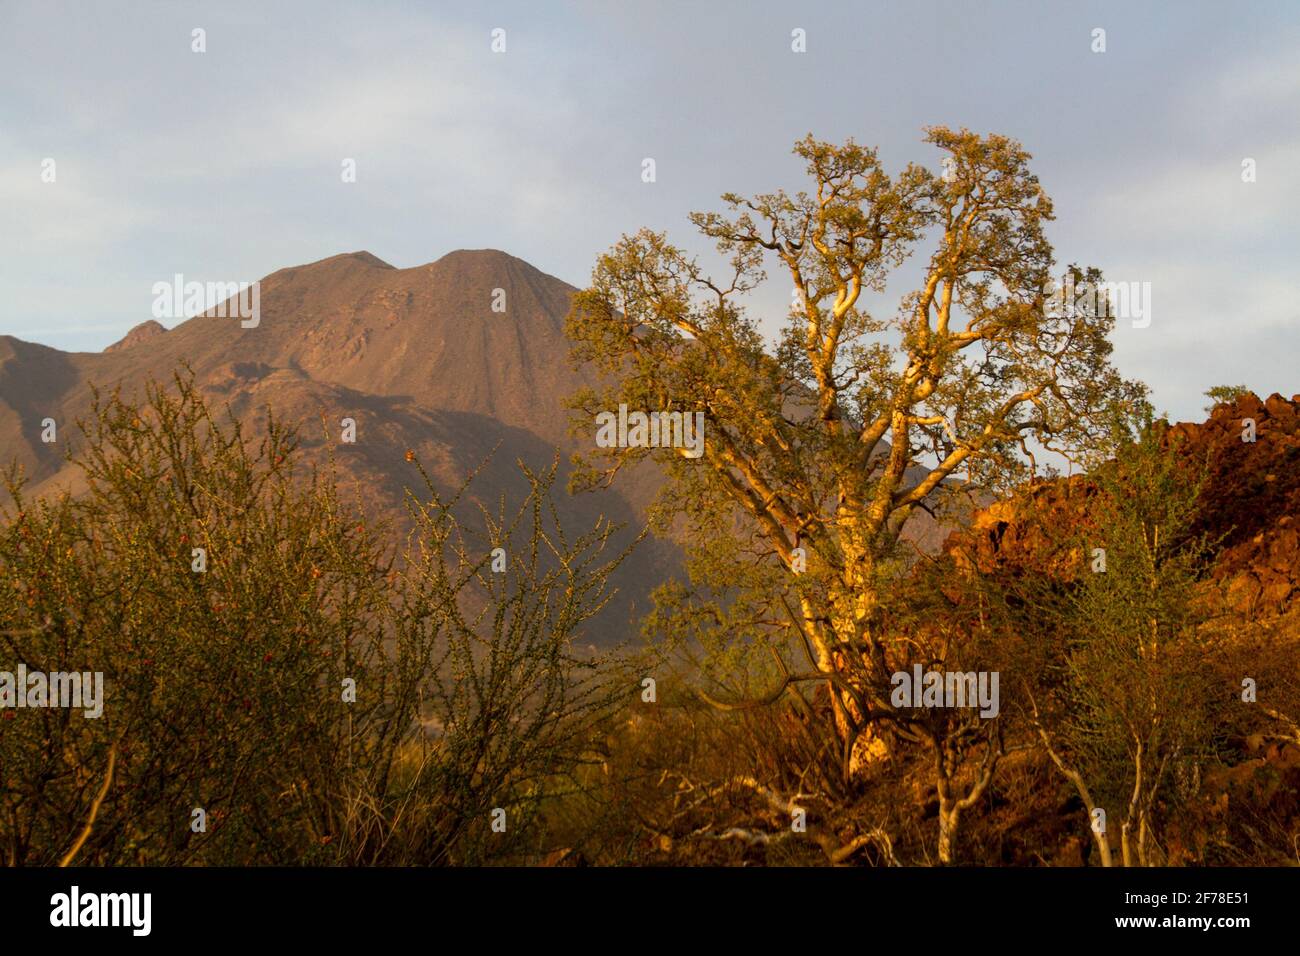 Tres Virgenes volcano Stock Photo